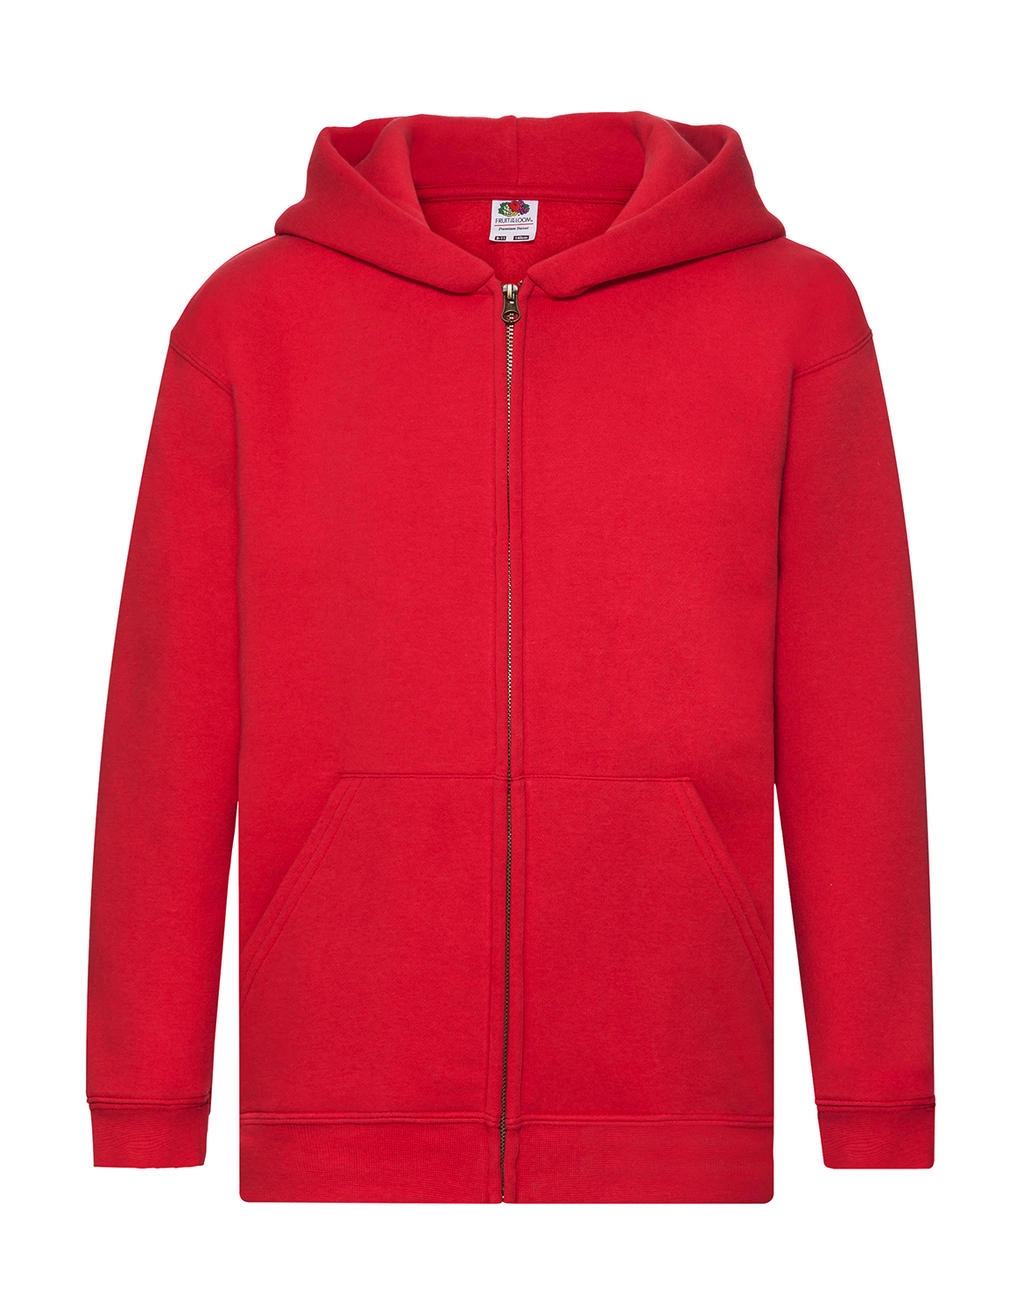 Kids` Premium Hooded Sweat Jacket zum Besticken und Bedrucken in der Farbe Red mit Ihren Logo, Schriftzug oder Motiv.